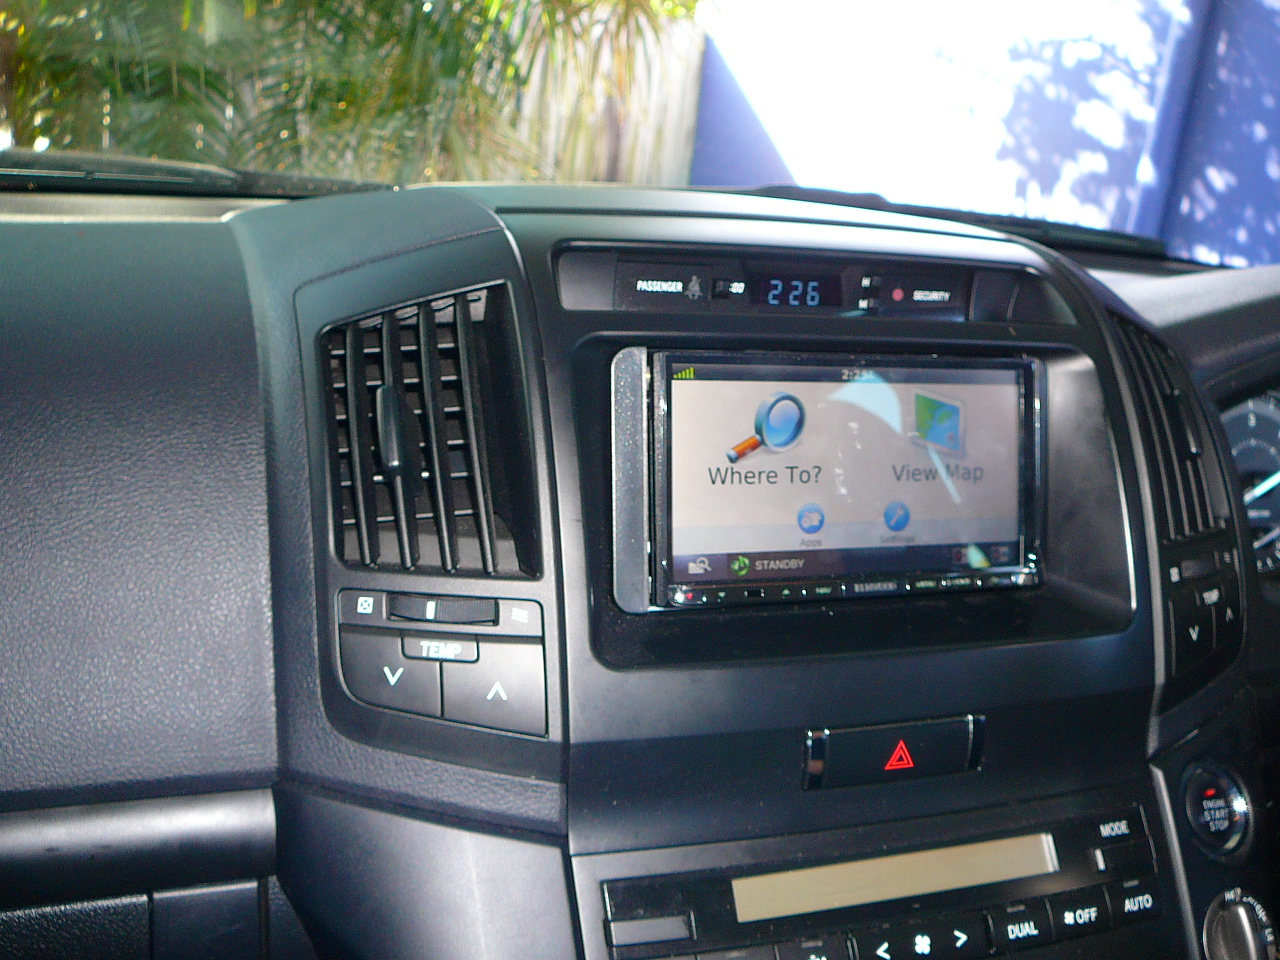 Toyota Landcruiser 200series, Kenwood GPS Navigation System – Custom Mounted Reverse Camera